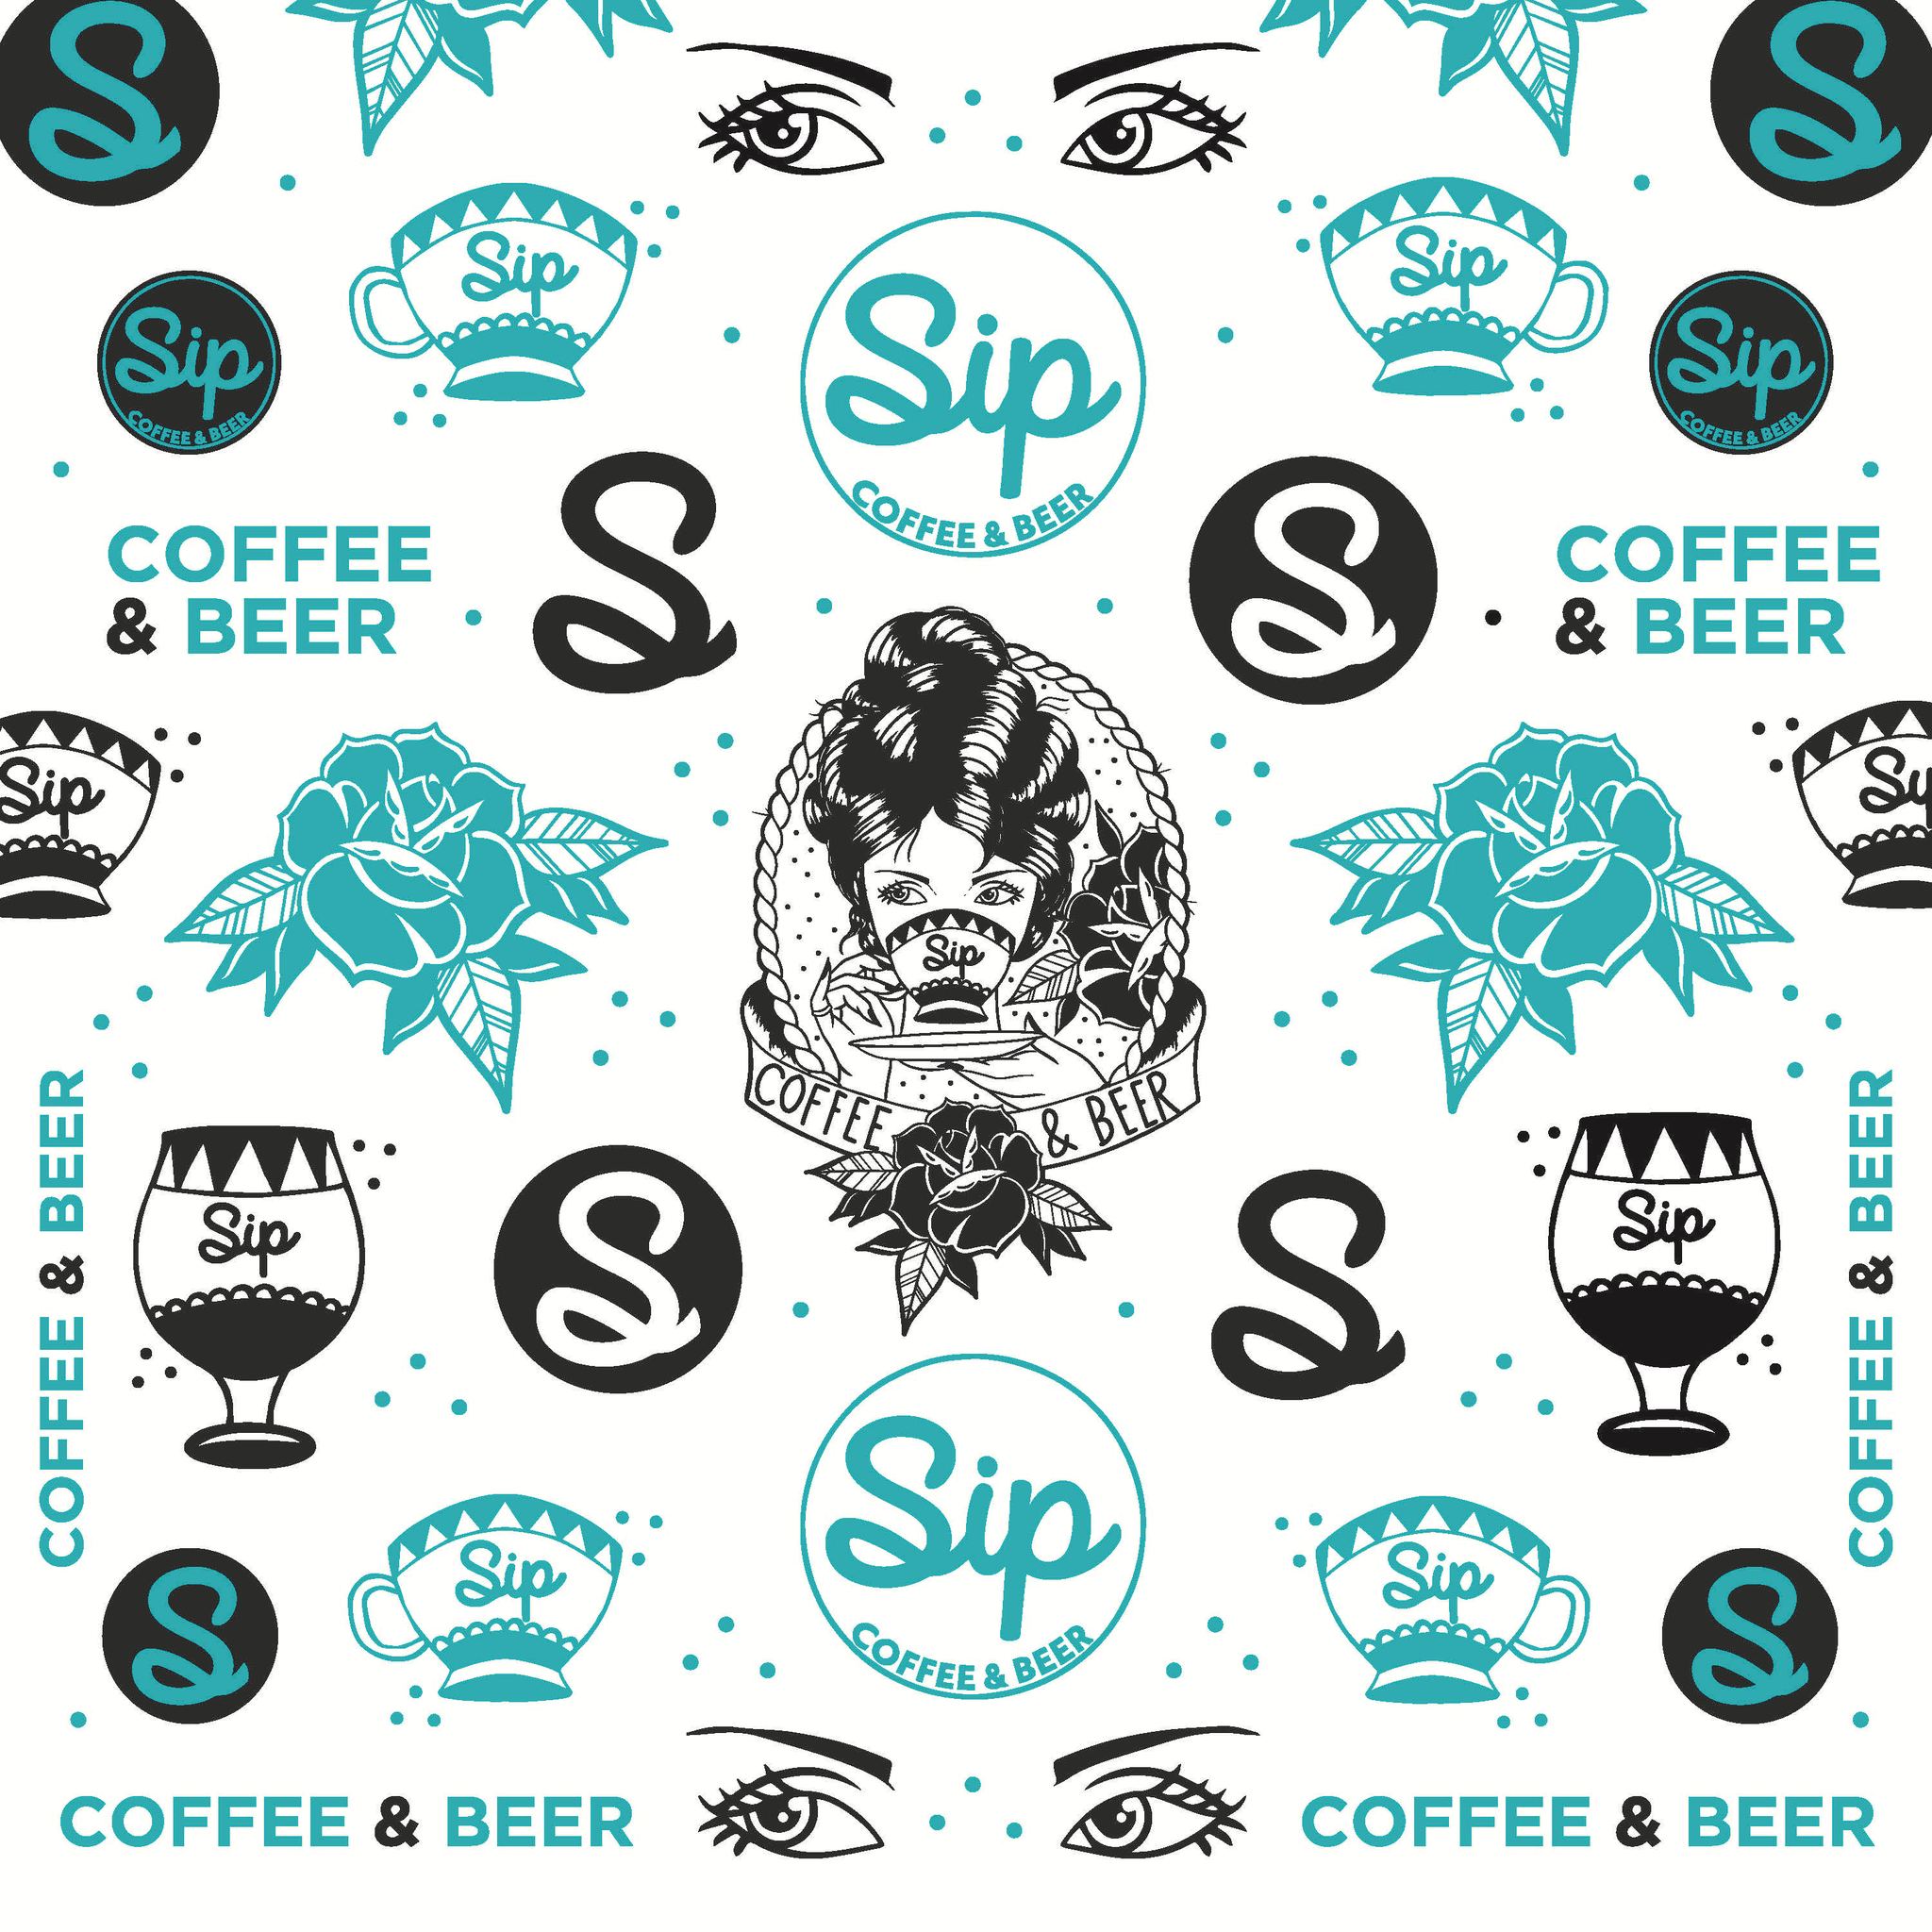 Sip Coffee & Beer: Scottsdale